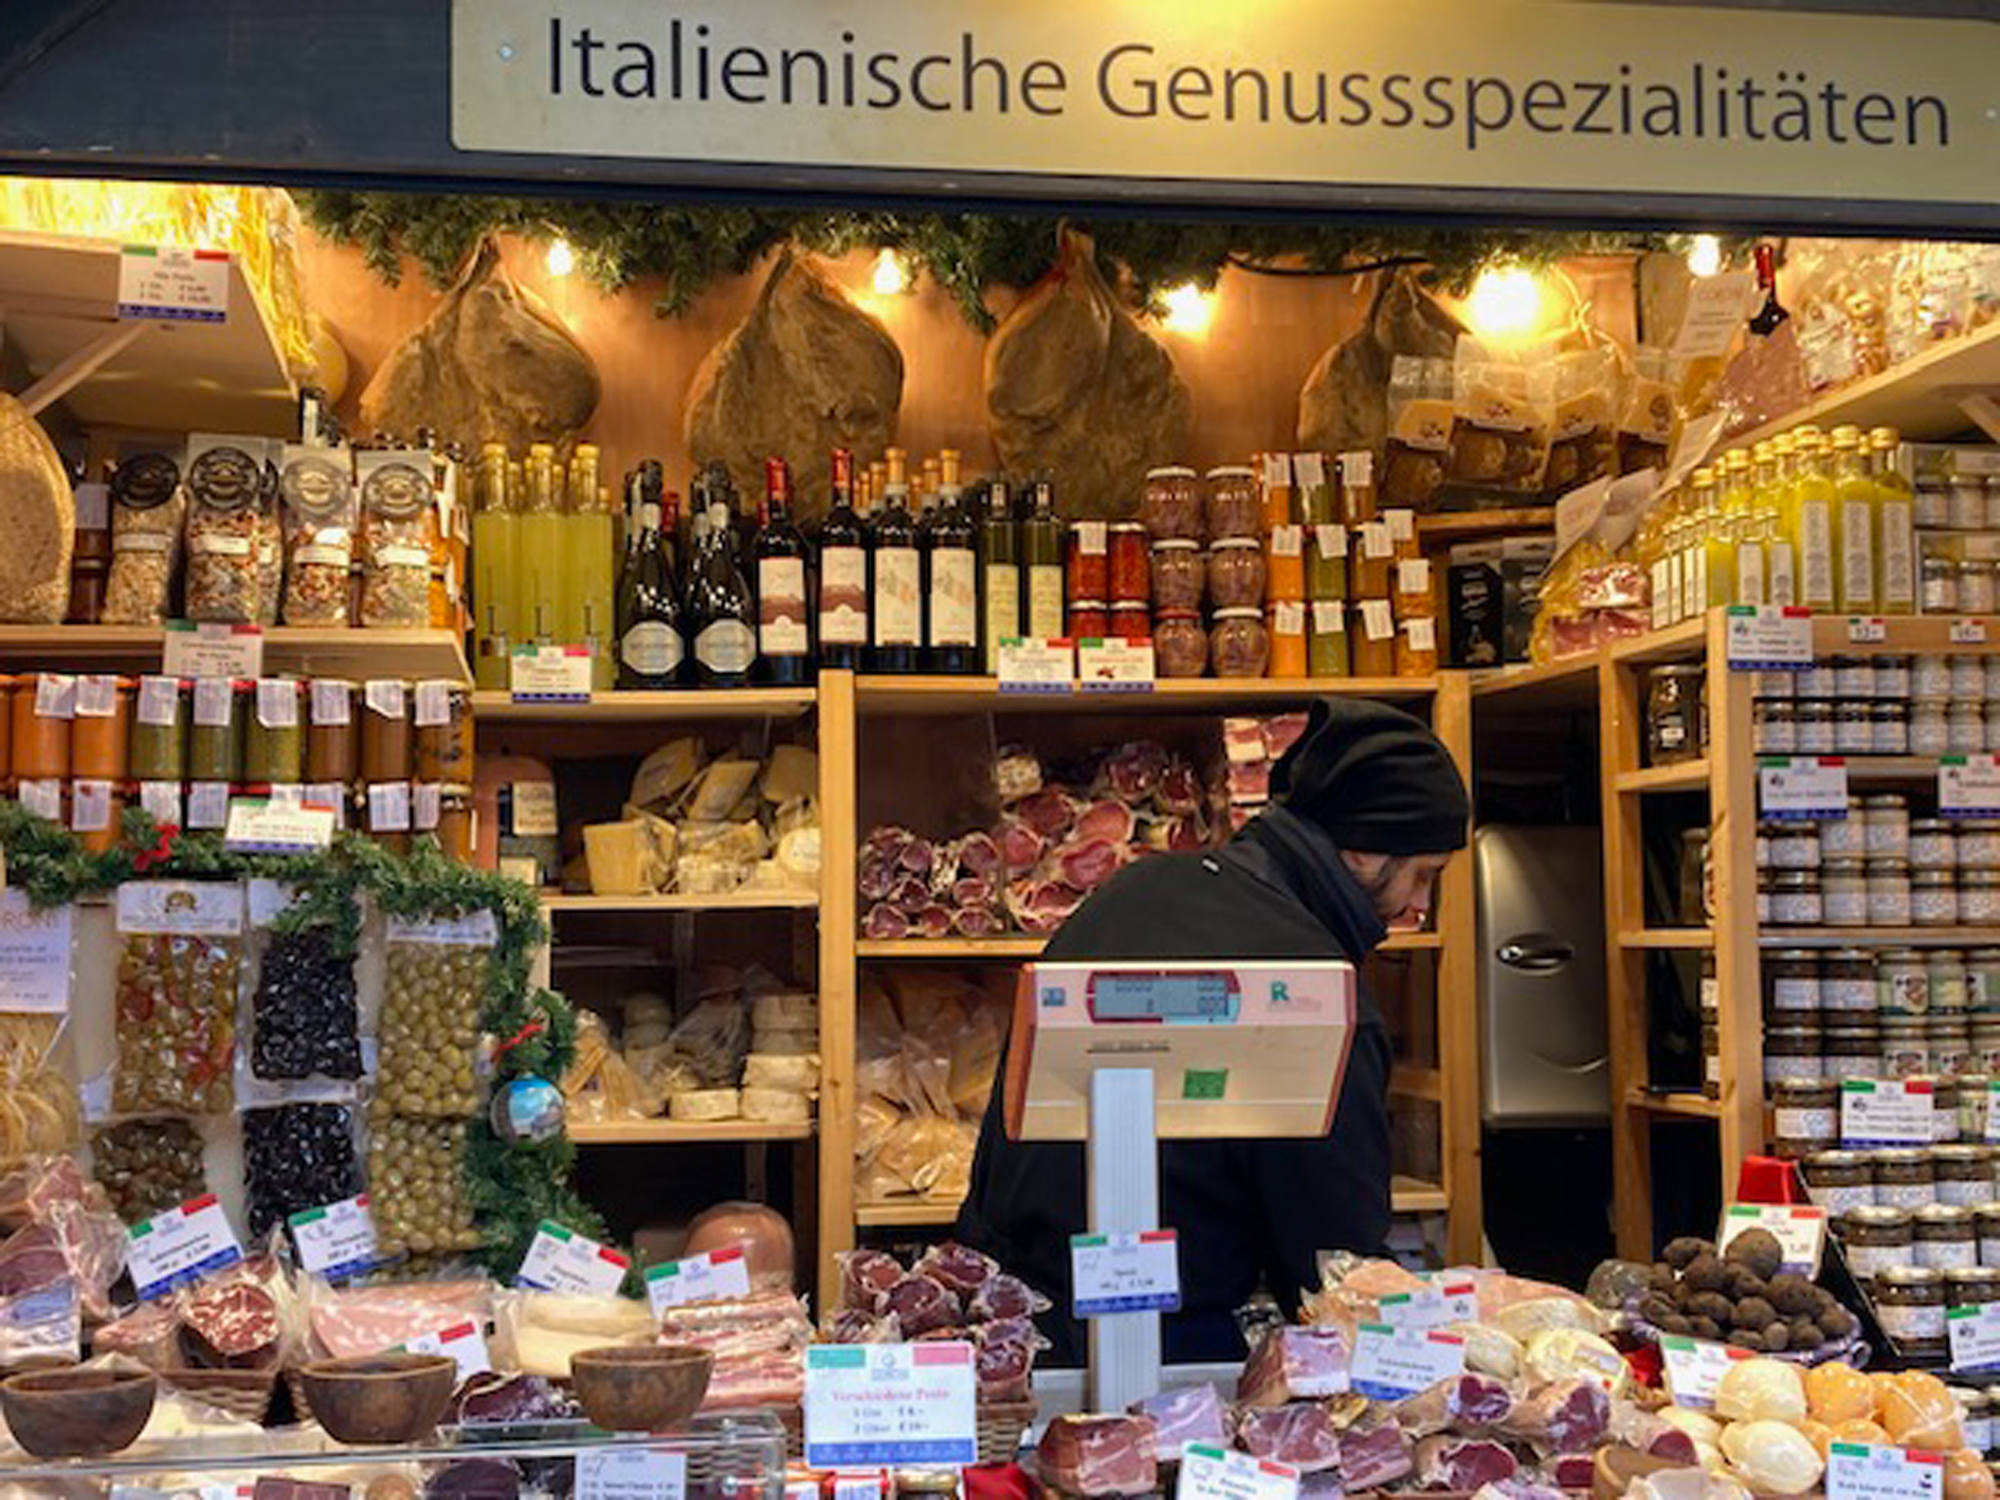 Vīnes Ziemassvētku tirdziņi ir starptautiski – olīvkoka izstrādājumi un itāļu delikateses te ir plaši iecienīti.